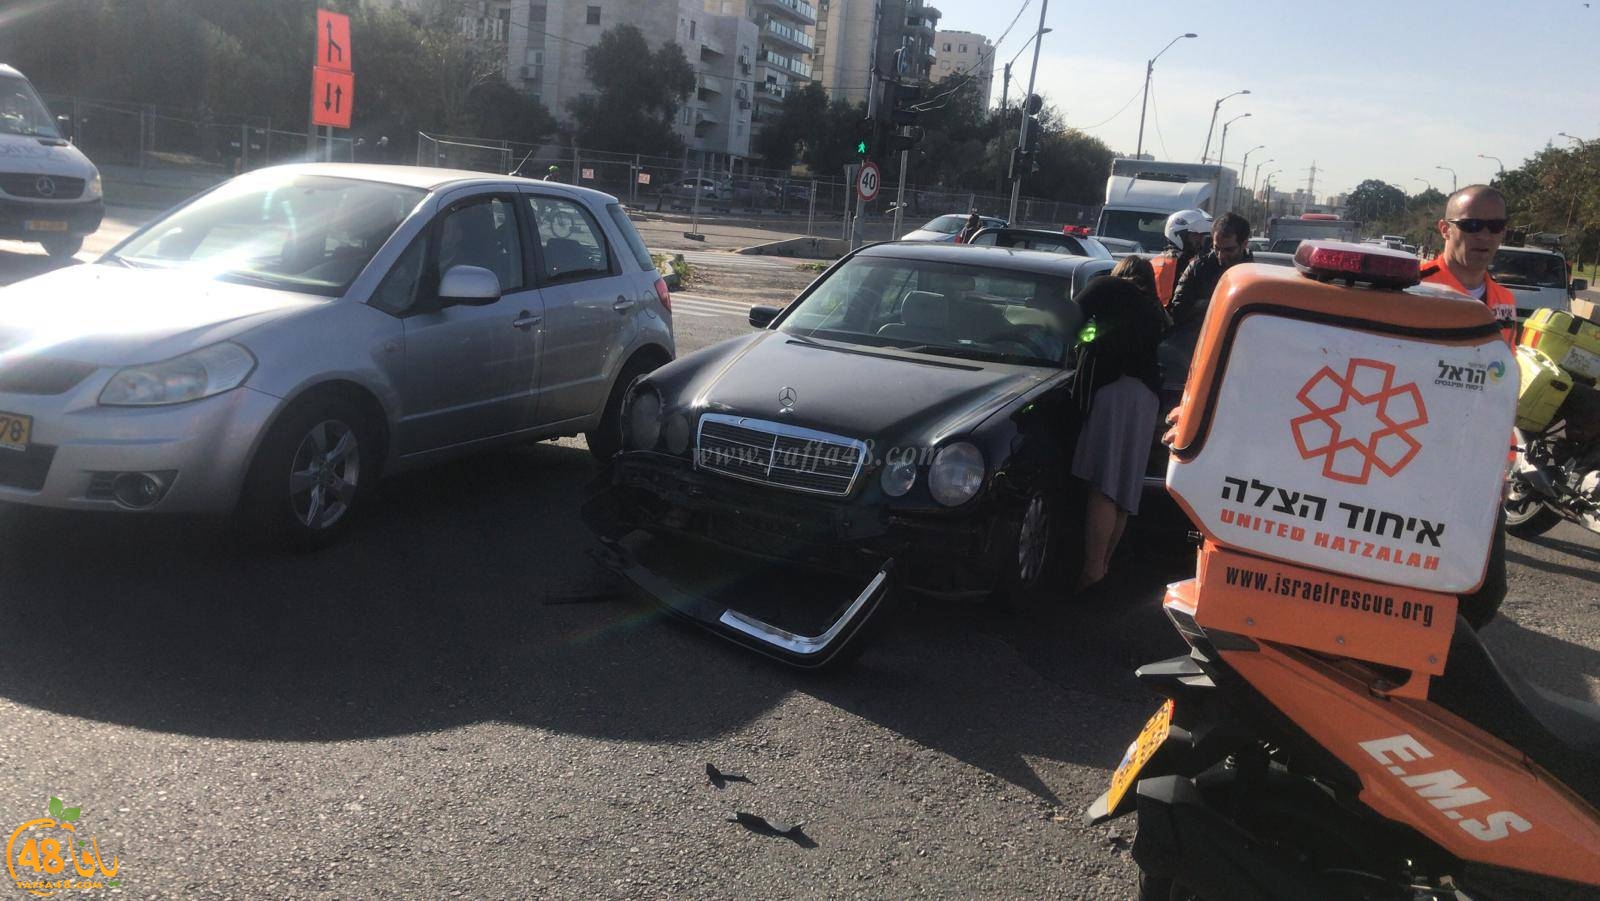  بالصور: إصابة طفيفة بحادث طرق بين مركبتين في مدينة يافا 